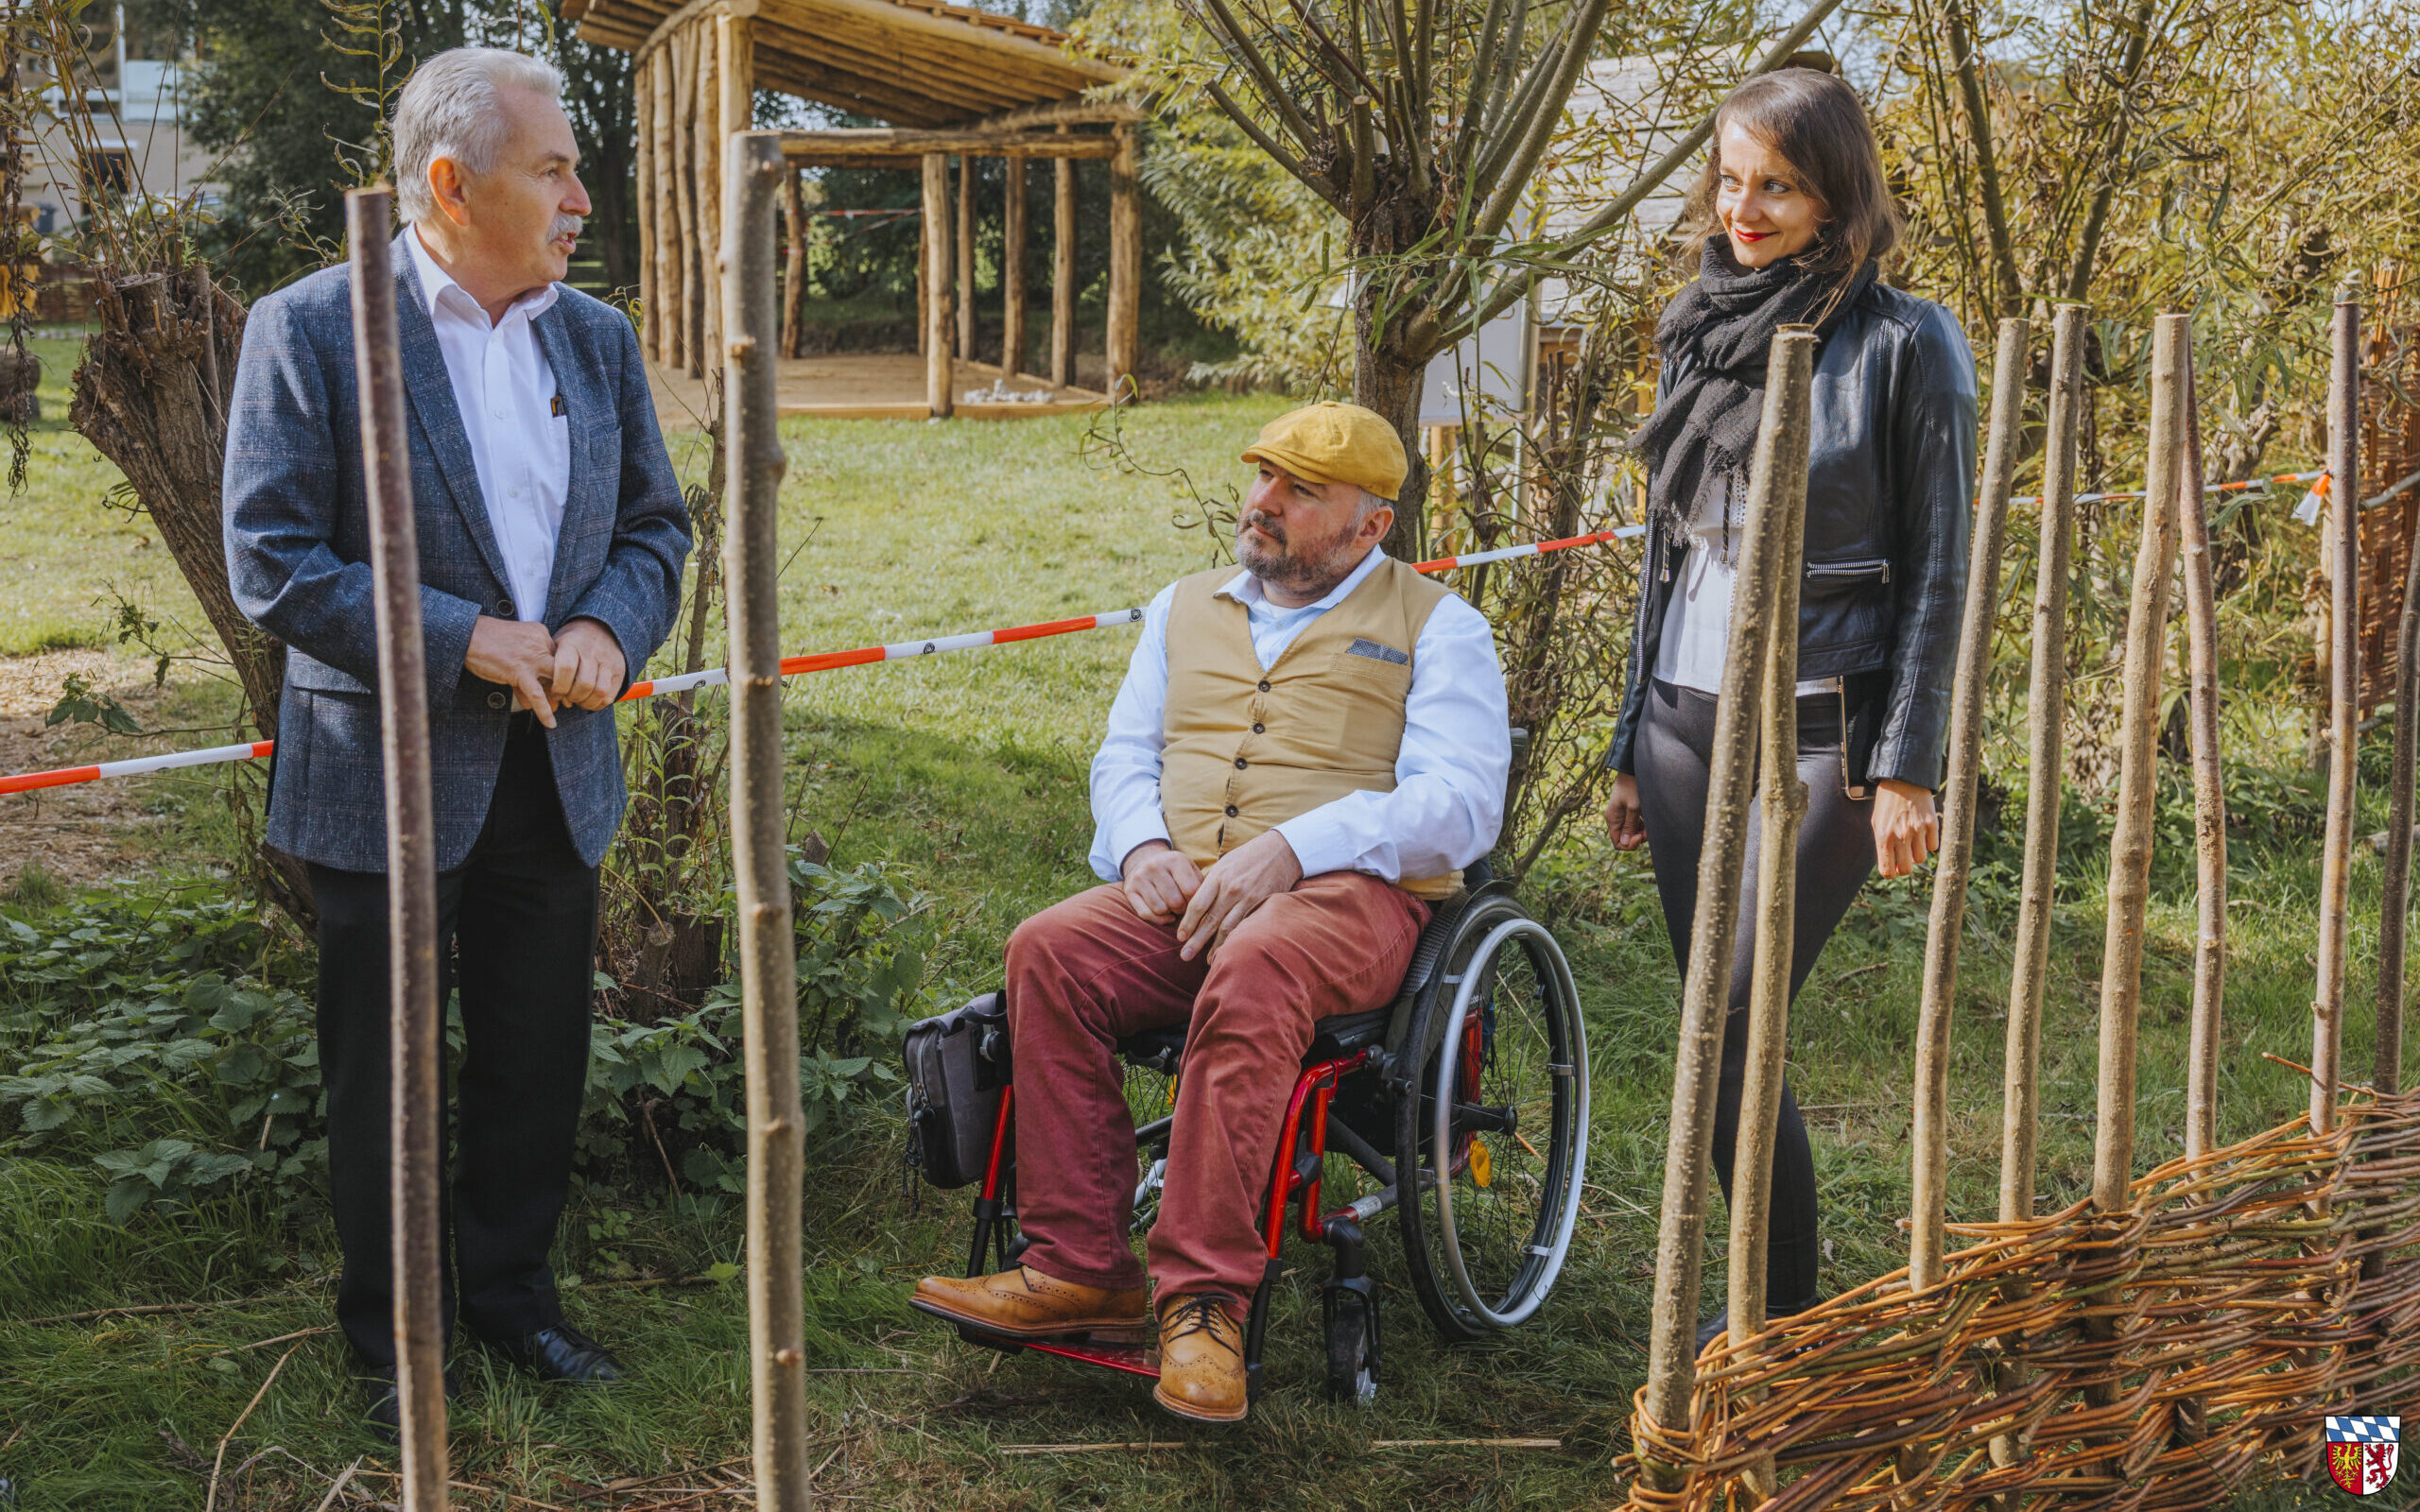 Eine Frau und 2 Männer, einer davon im Rollstuhl, befinden sich draußen in einem Garten. Im Vordergrund kann man einen halbfertigen Weidezaun sehen.